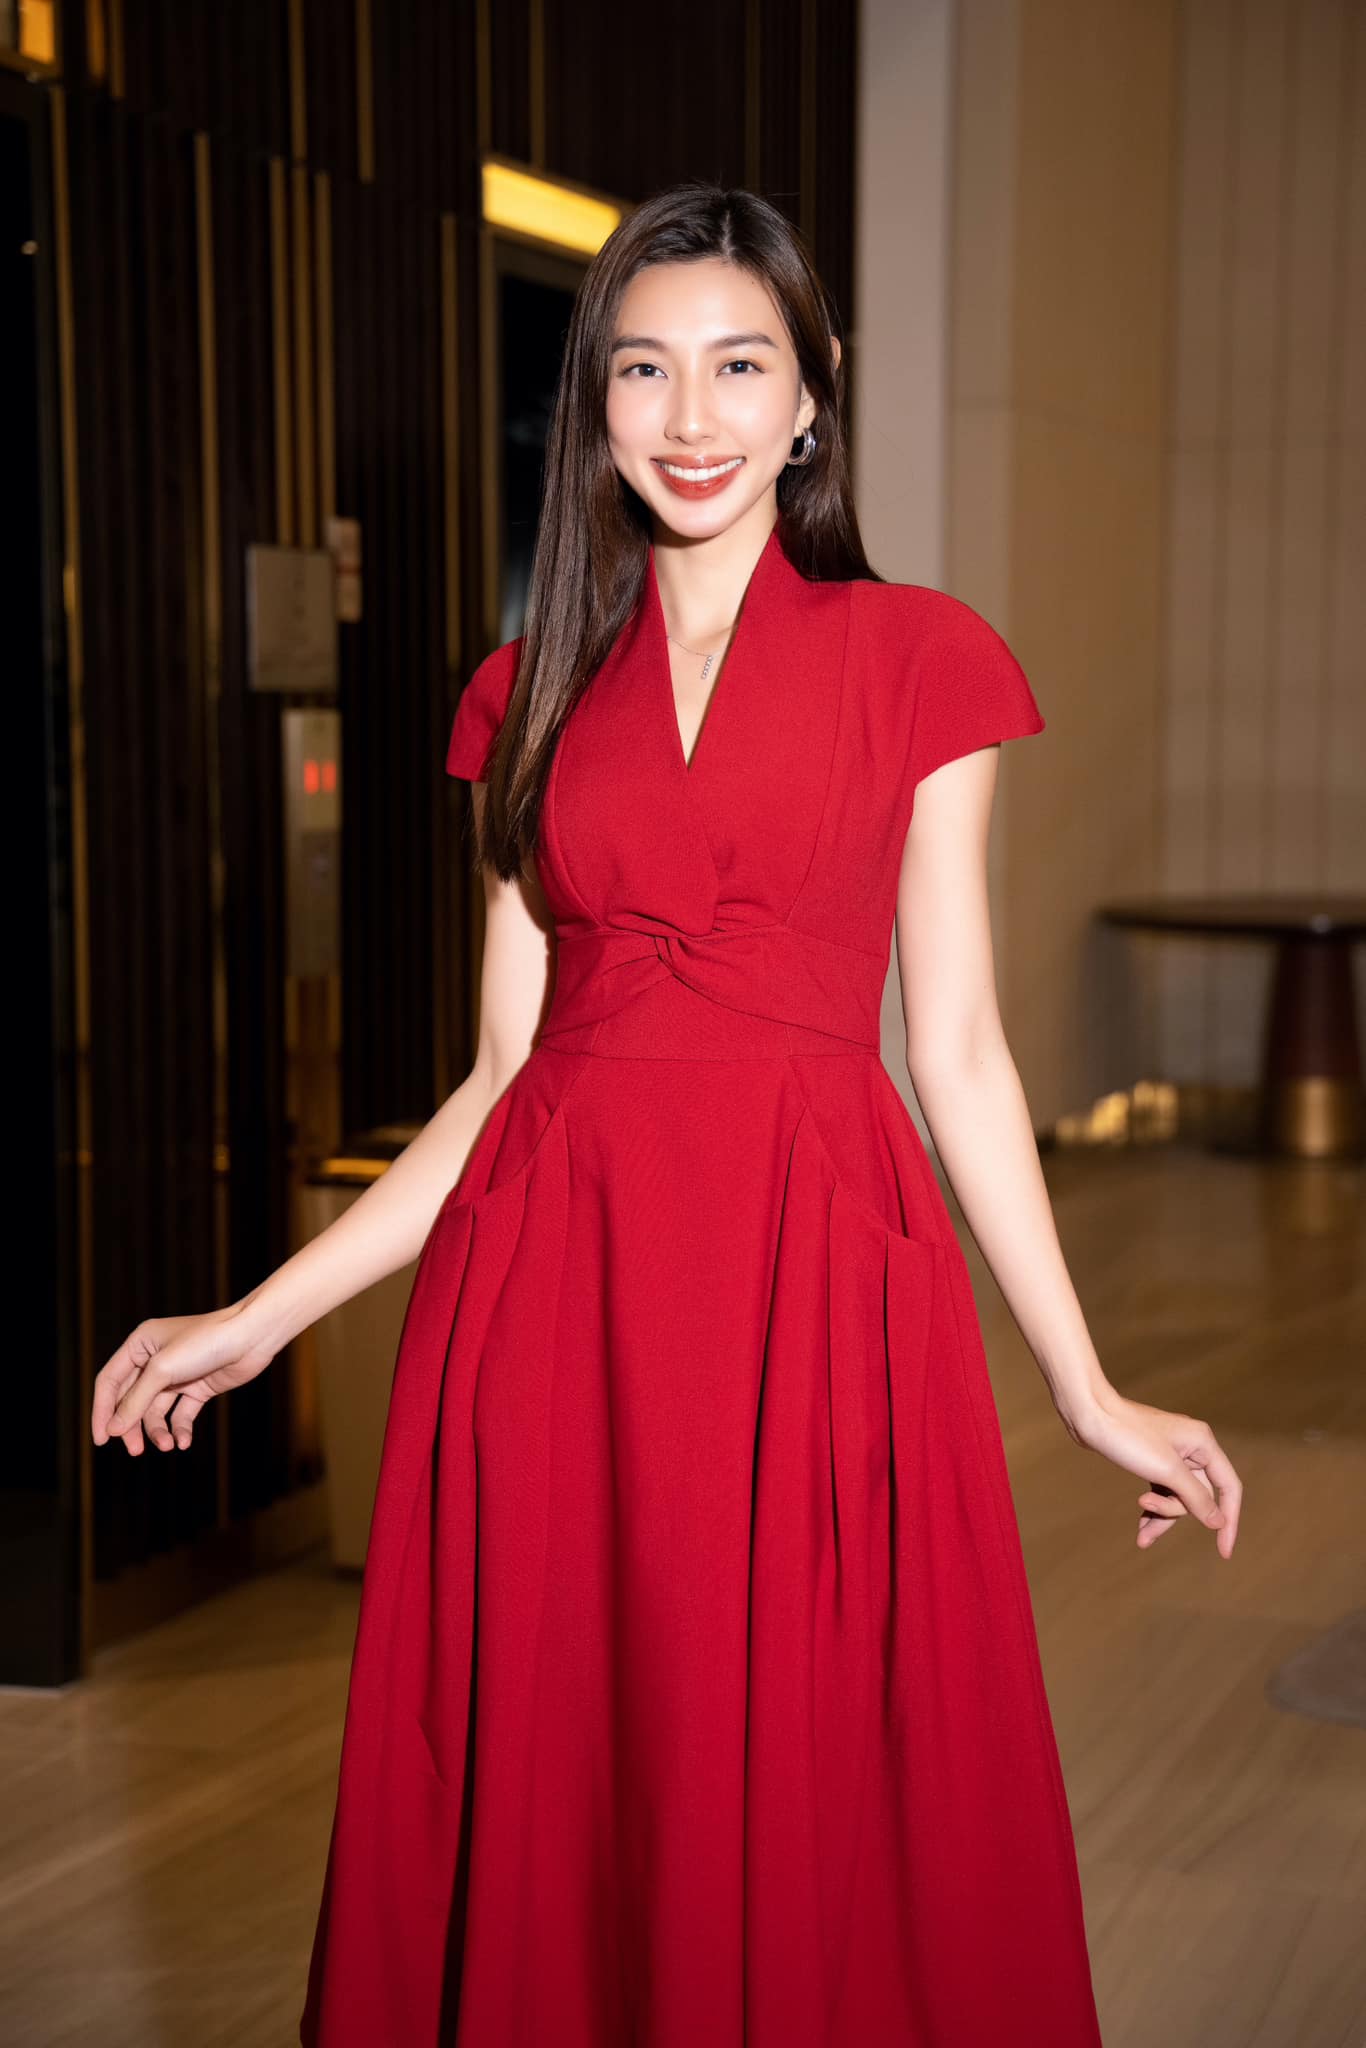 Hoa hậu Thùy Tiên: “Tôi giấu kín chuyện tình cảm để duy trì hạnh phúc” - Ảnh 1.